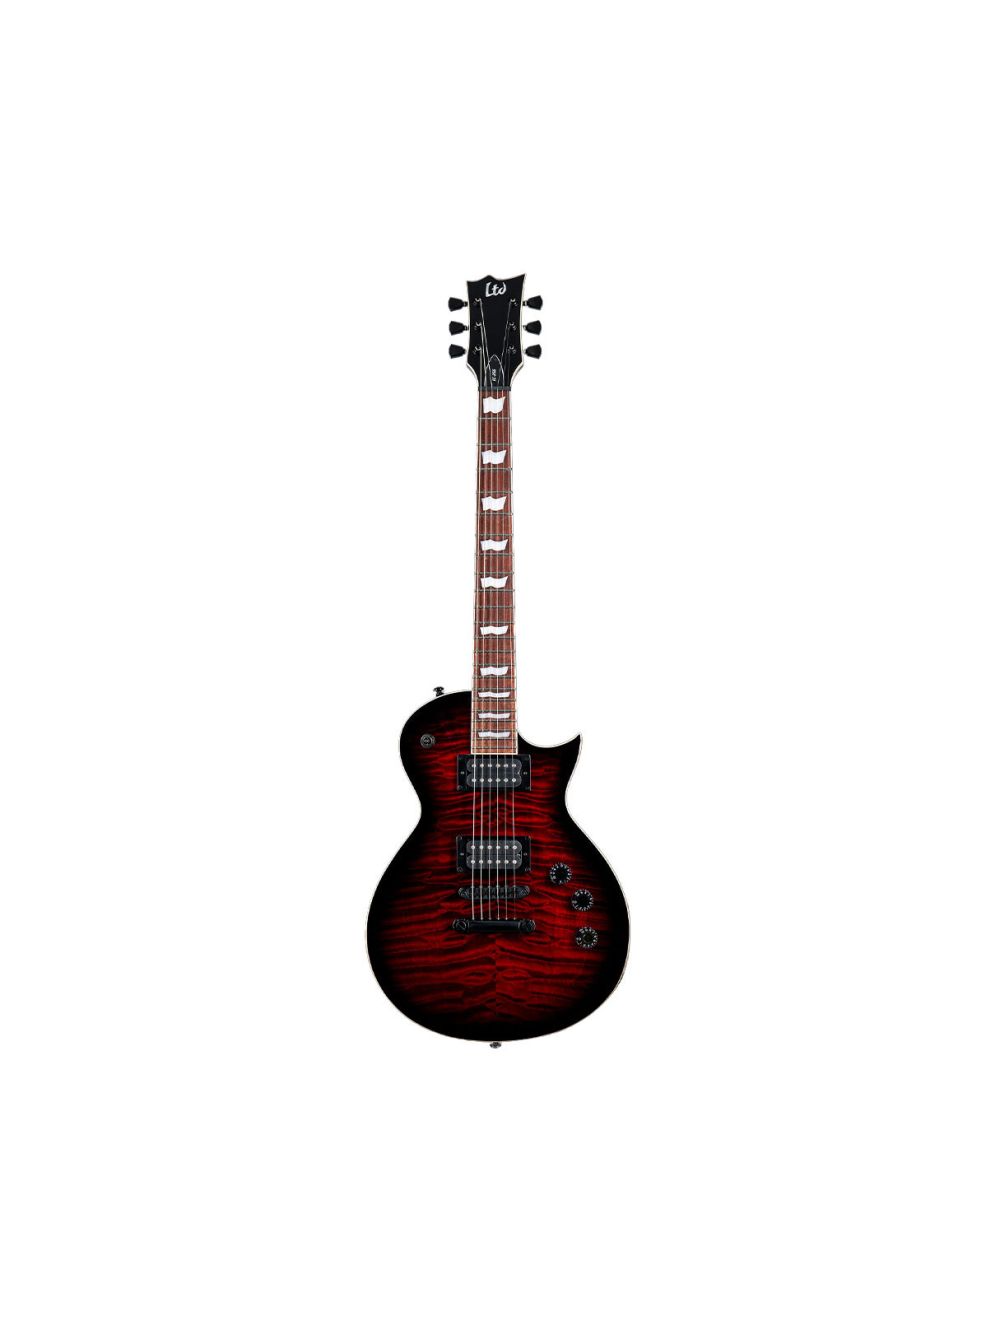 LTD EC-256QM See Thru Black Cherry SB Electric Guitar